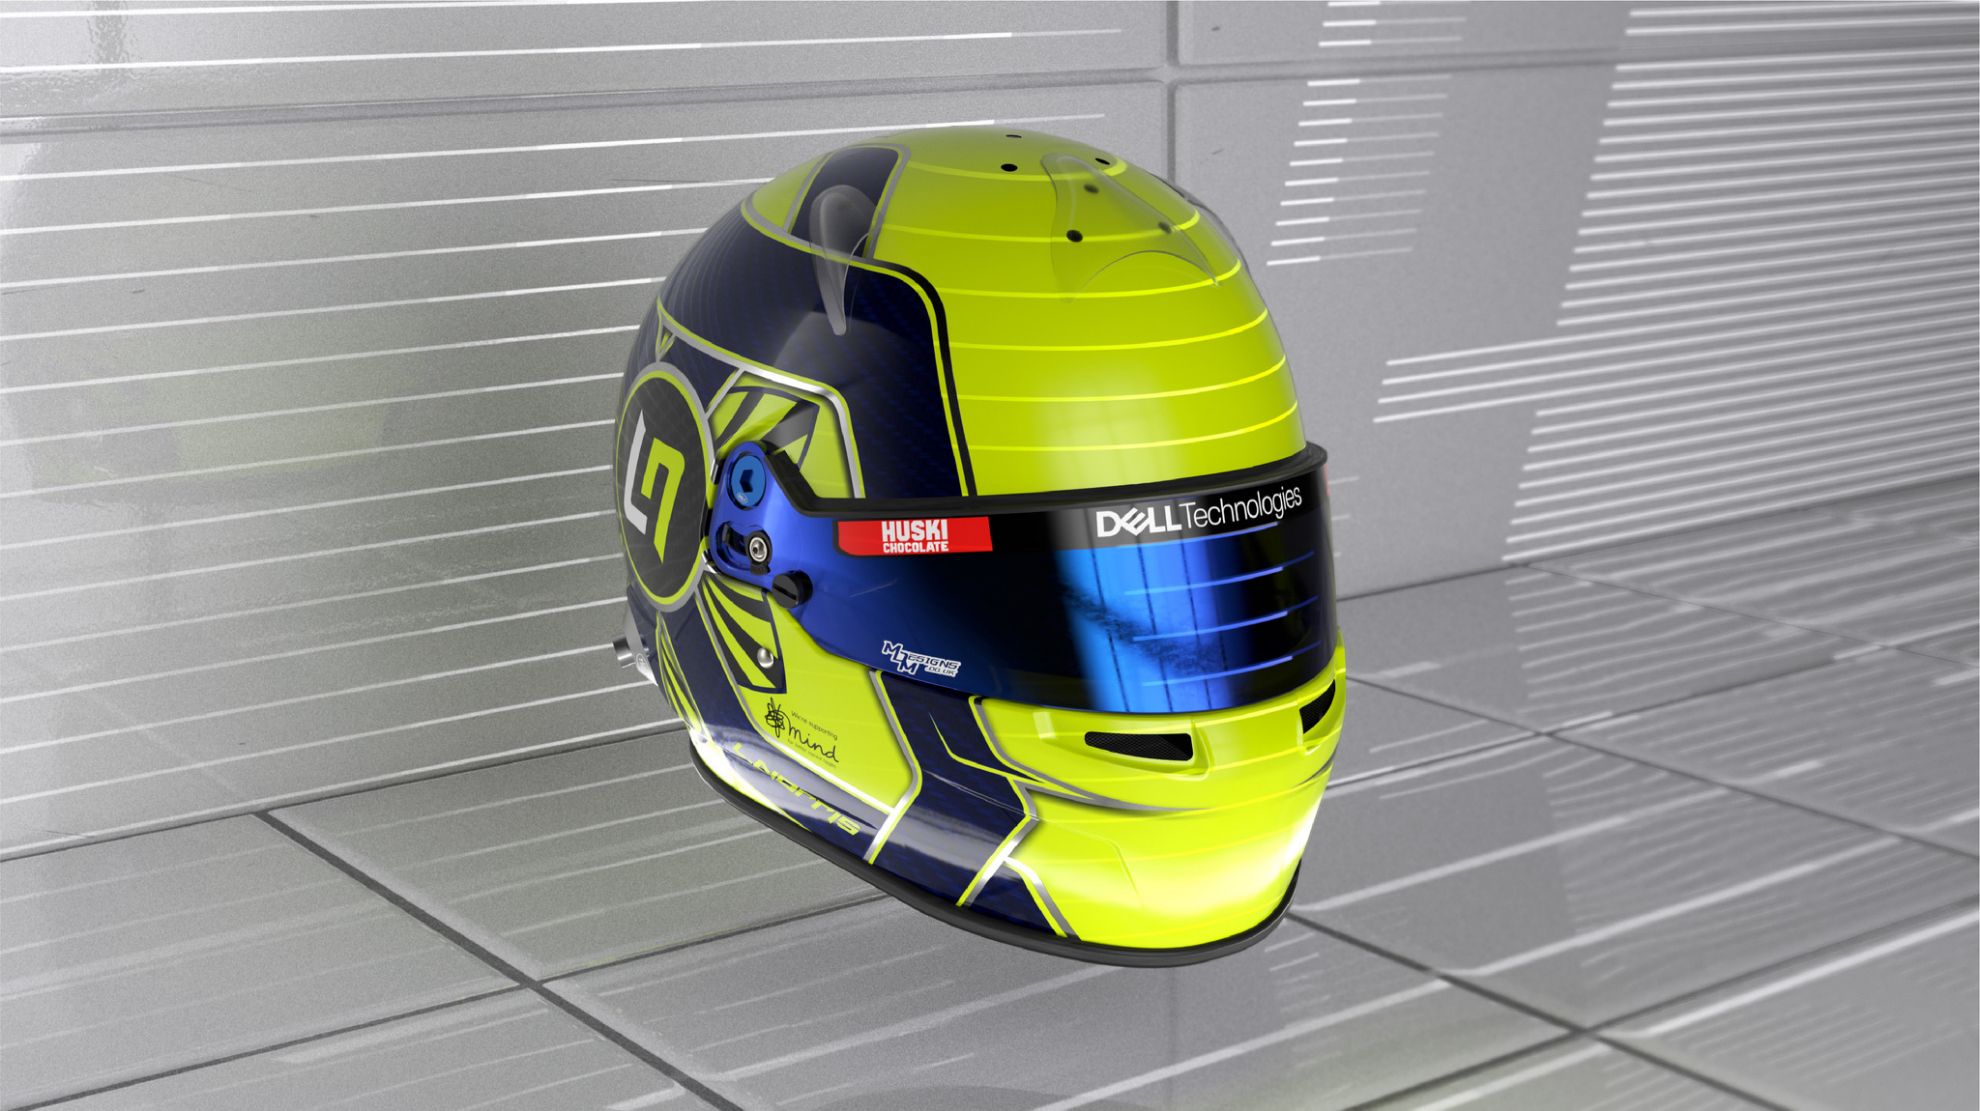 El amarillo, homenaje a Valentino Rossi, es el color que predomina en sus cascos.